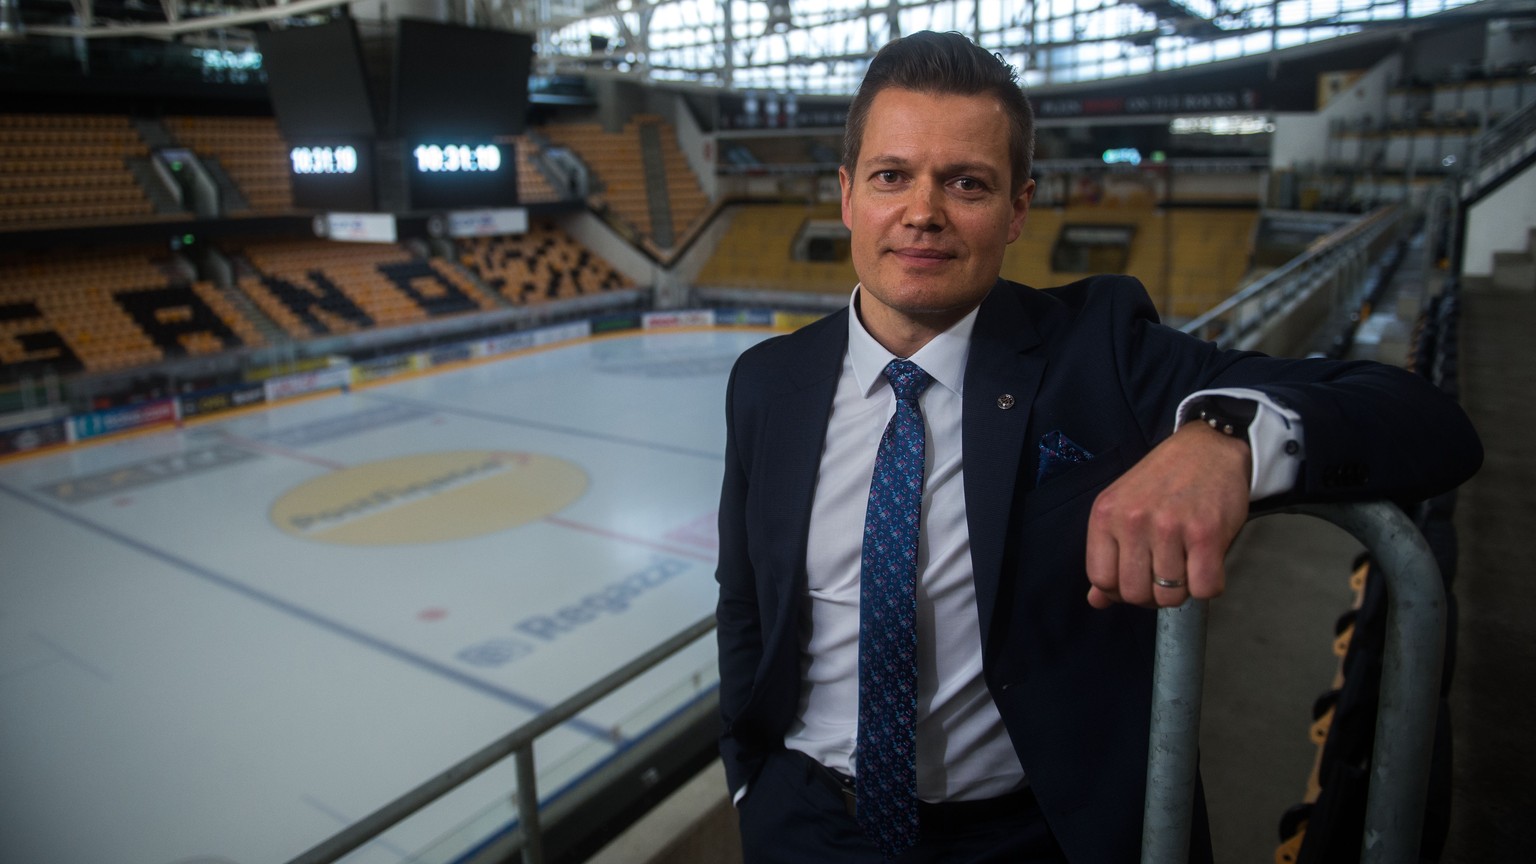 Sami Kapanen, der neue Cheftrainer des Hockey Club Lugano (HCL), steht in der Corner Arena anlaesslich einer Pressekonferenz, am Montag, 8. April 2019, in Lugano. (KEYSTONE/TI-PRESS/Samuel Golay)